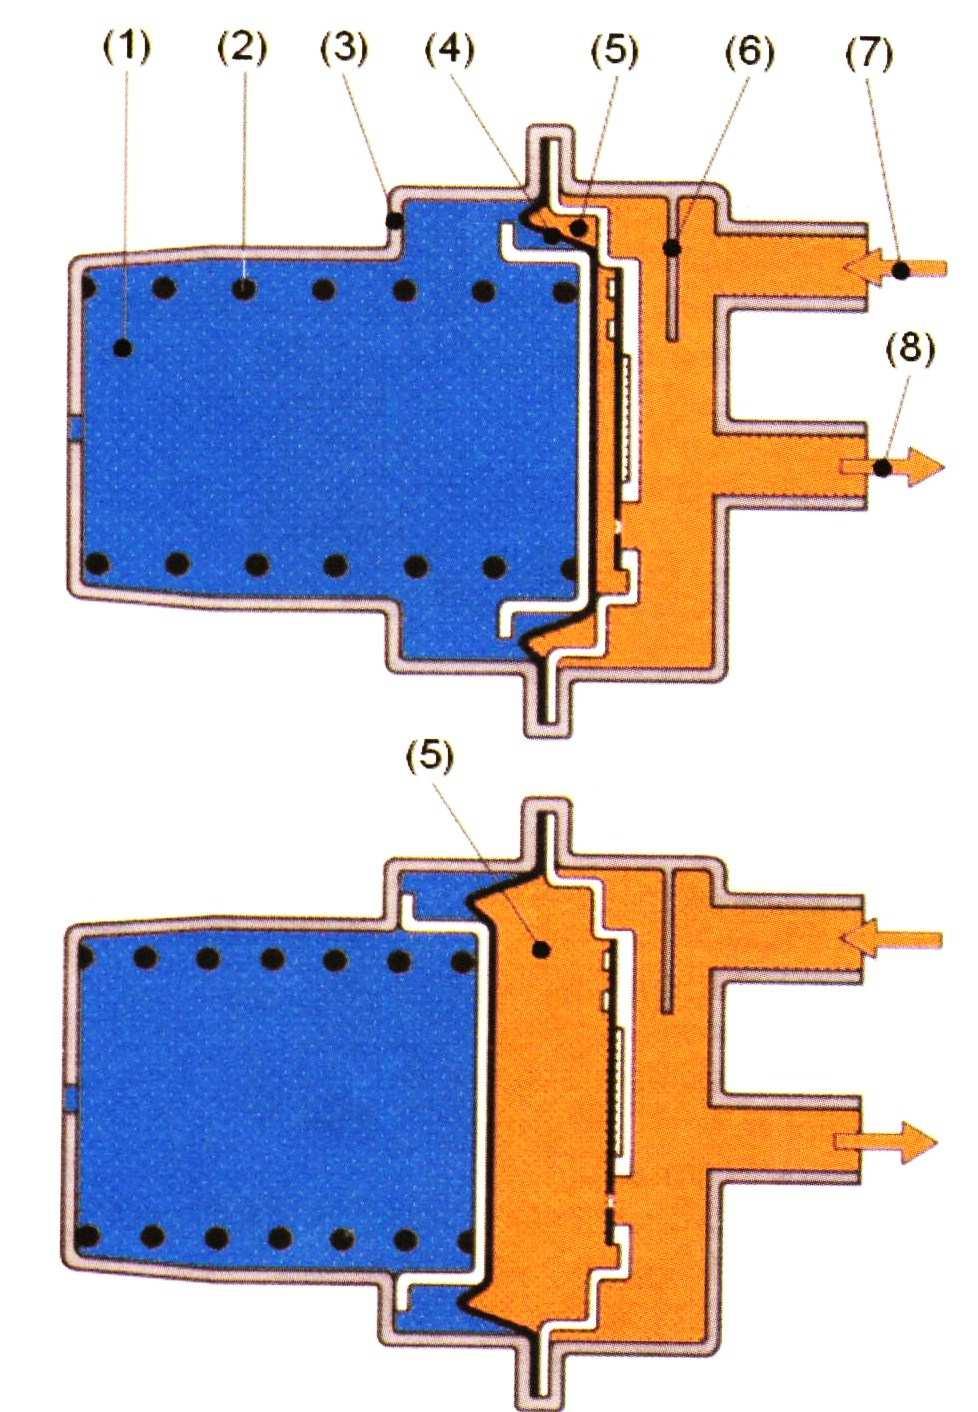 rozdělovače množství paliva (7) je palivo přiváděno k jednotlivým vstřikovacím ventilům (1). Vstřikovací ventily vstřikují nepřerušovaně na sací ventily. Otevírány jsou tlakem paliva.